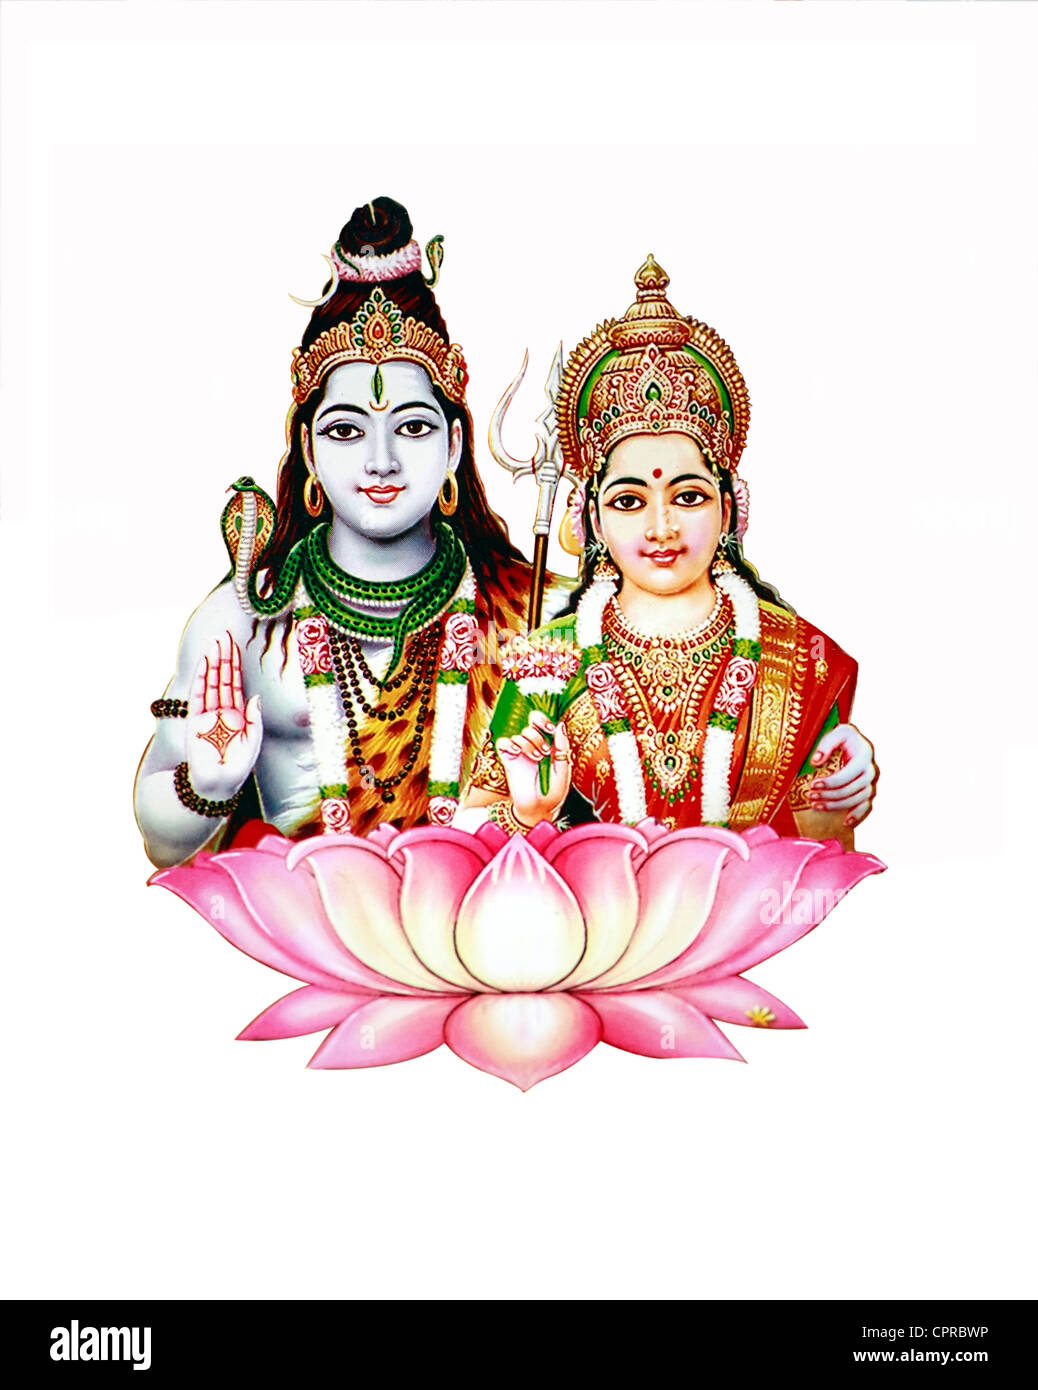 Shiva und Parvati - Götter in der hinduistischen Mythologie Anbetung Stockfoto